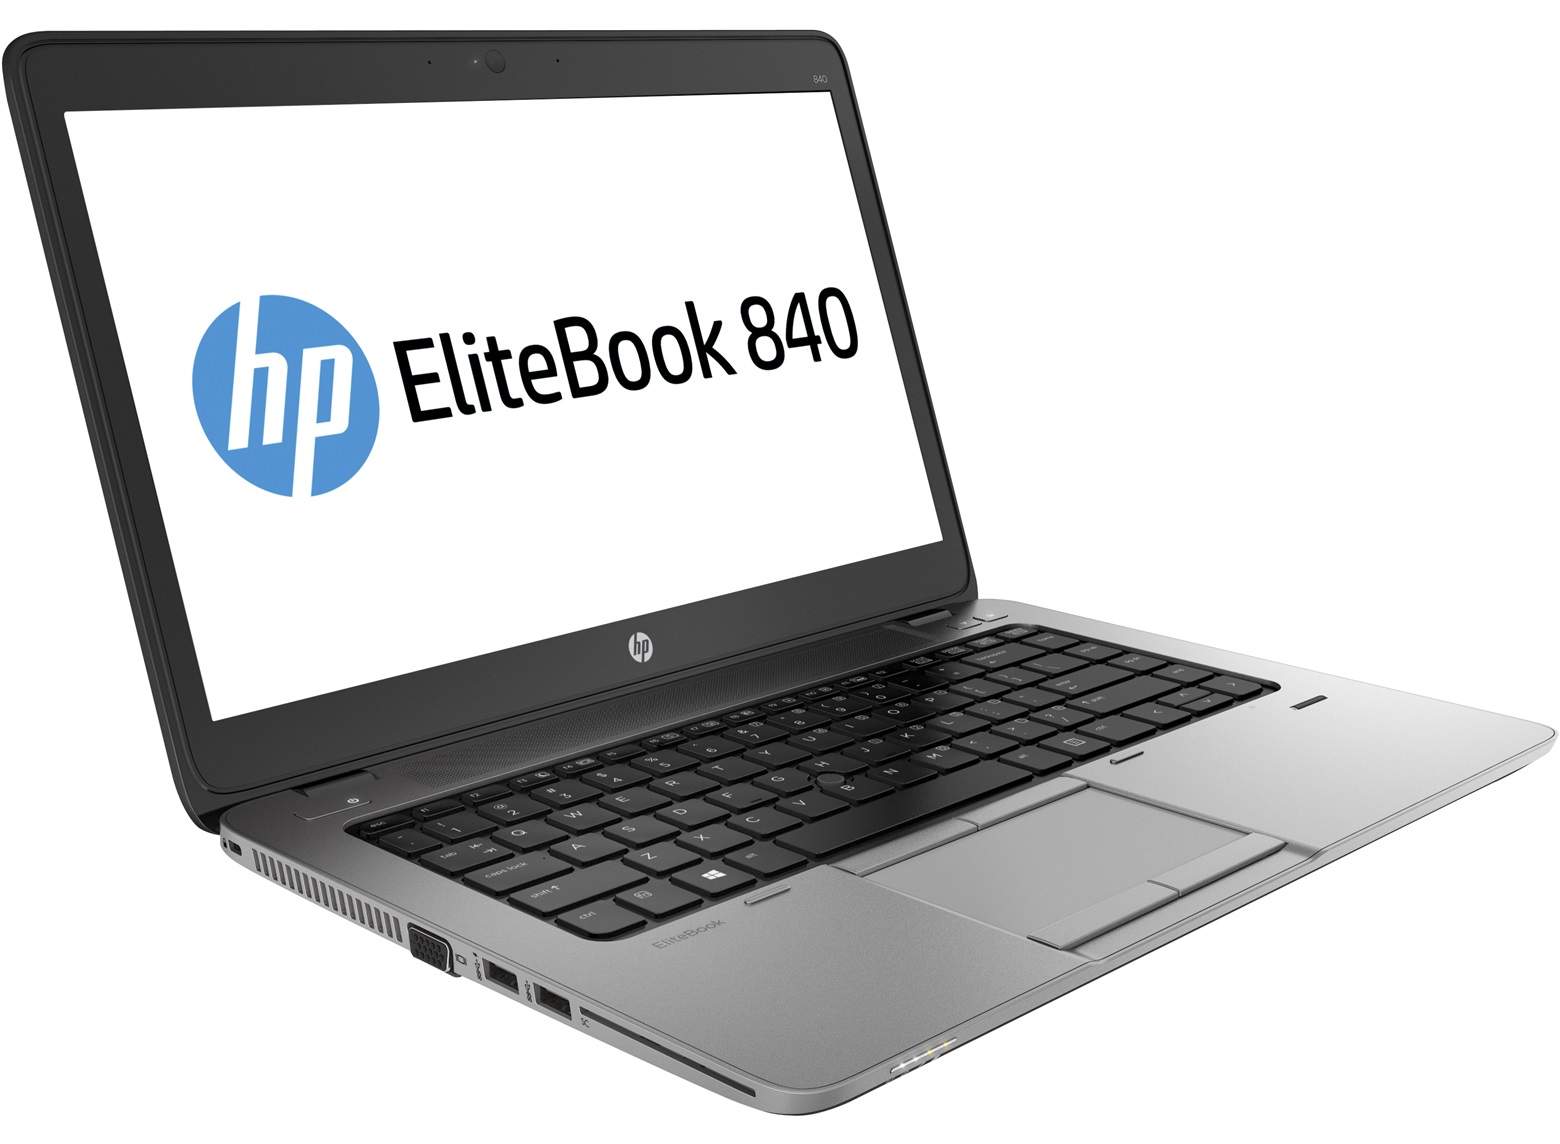 HP elitebook 840 G1 i5-4300U Ram 4G SSD 128G